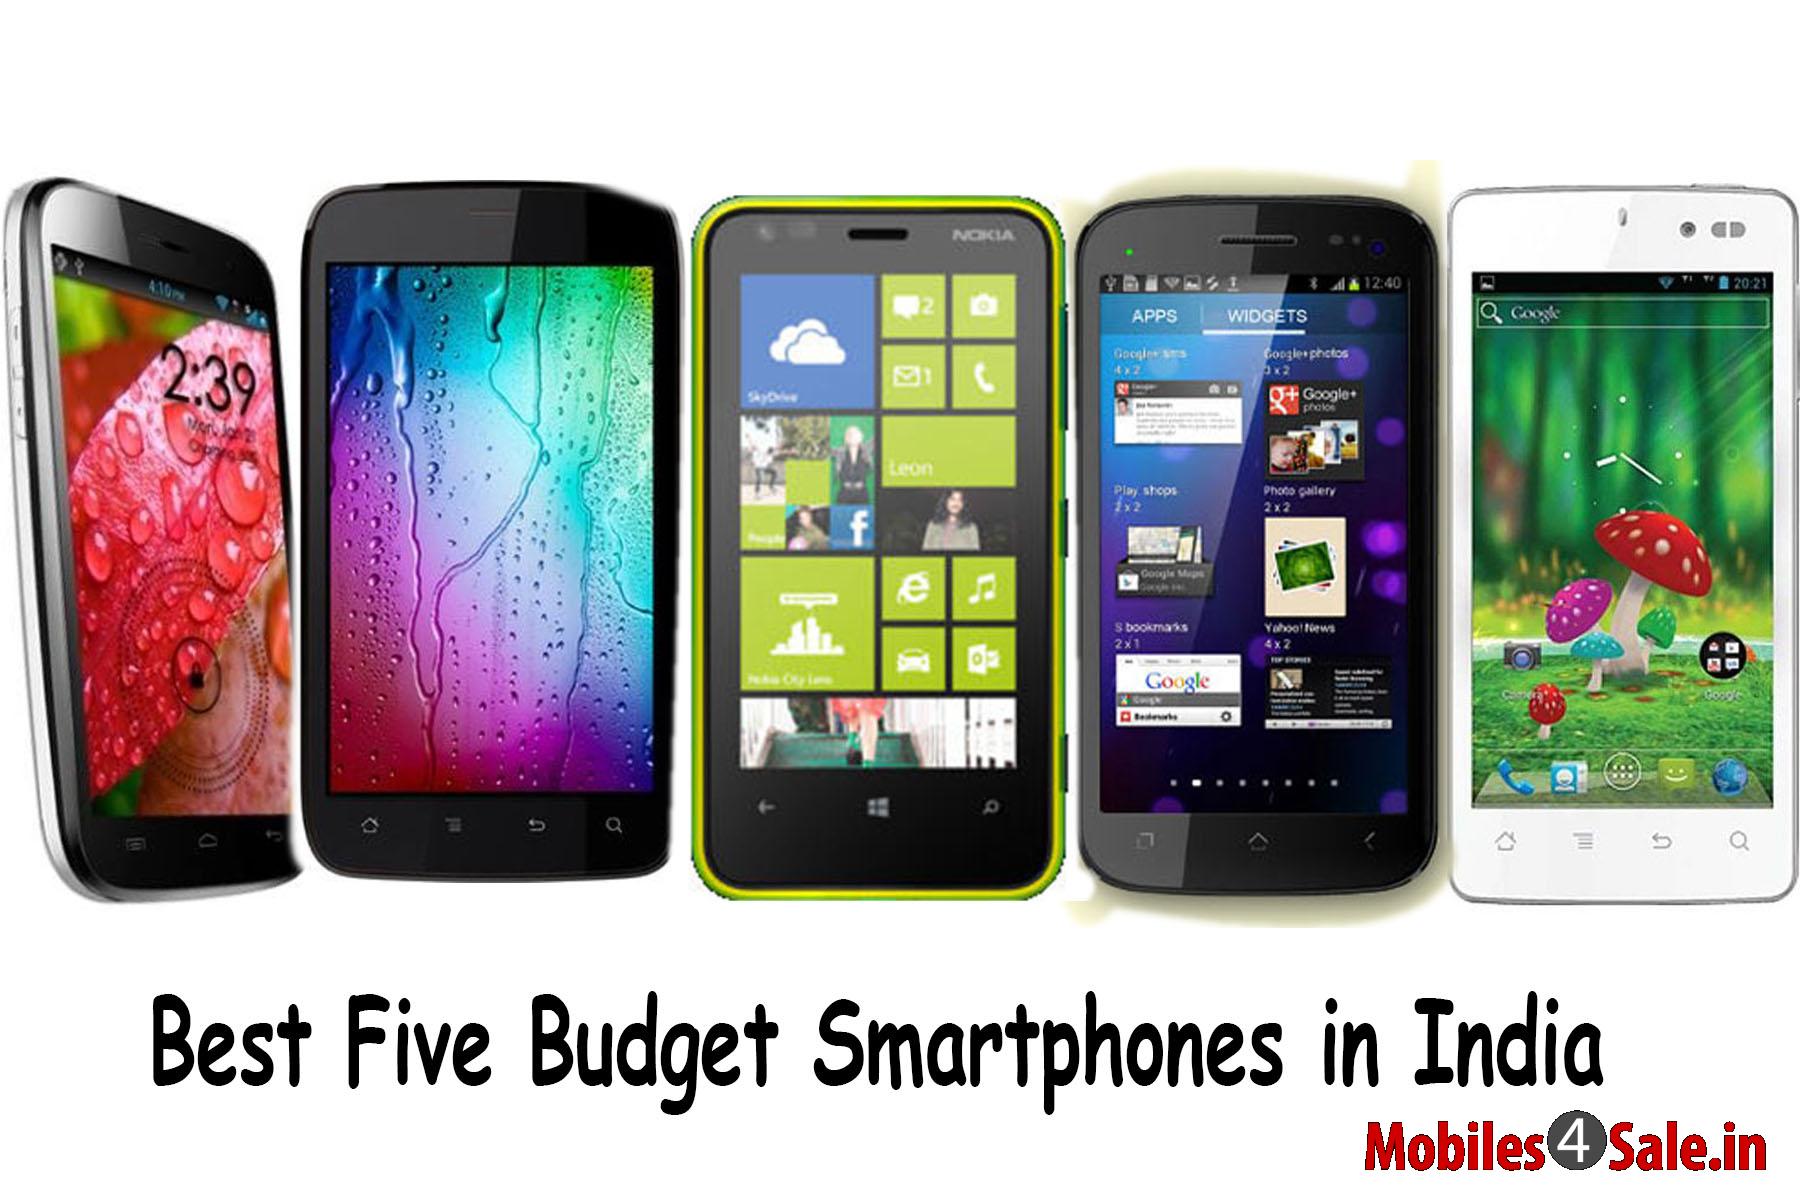 Best Five Budget Smartphones in India - Mobiles4Sale